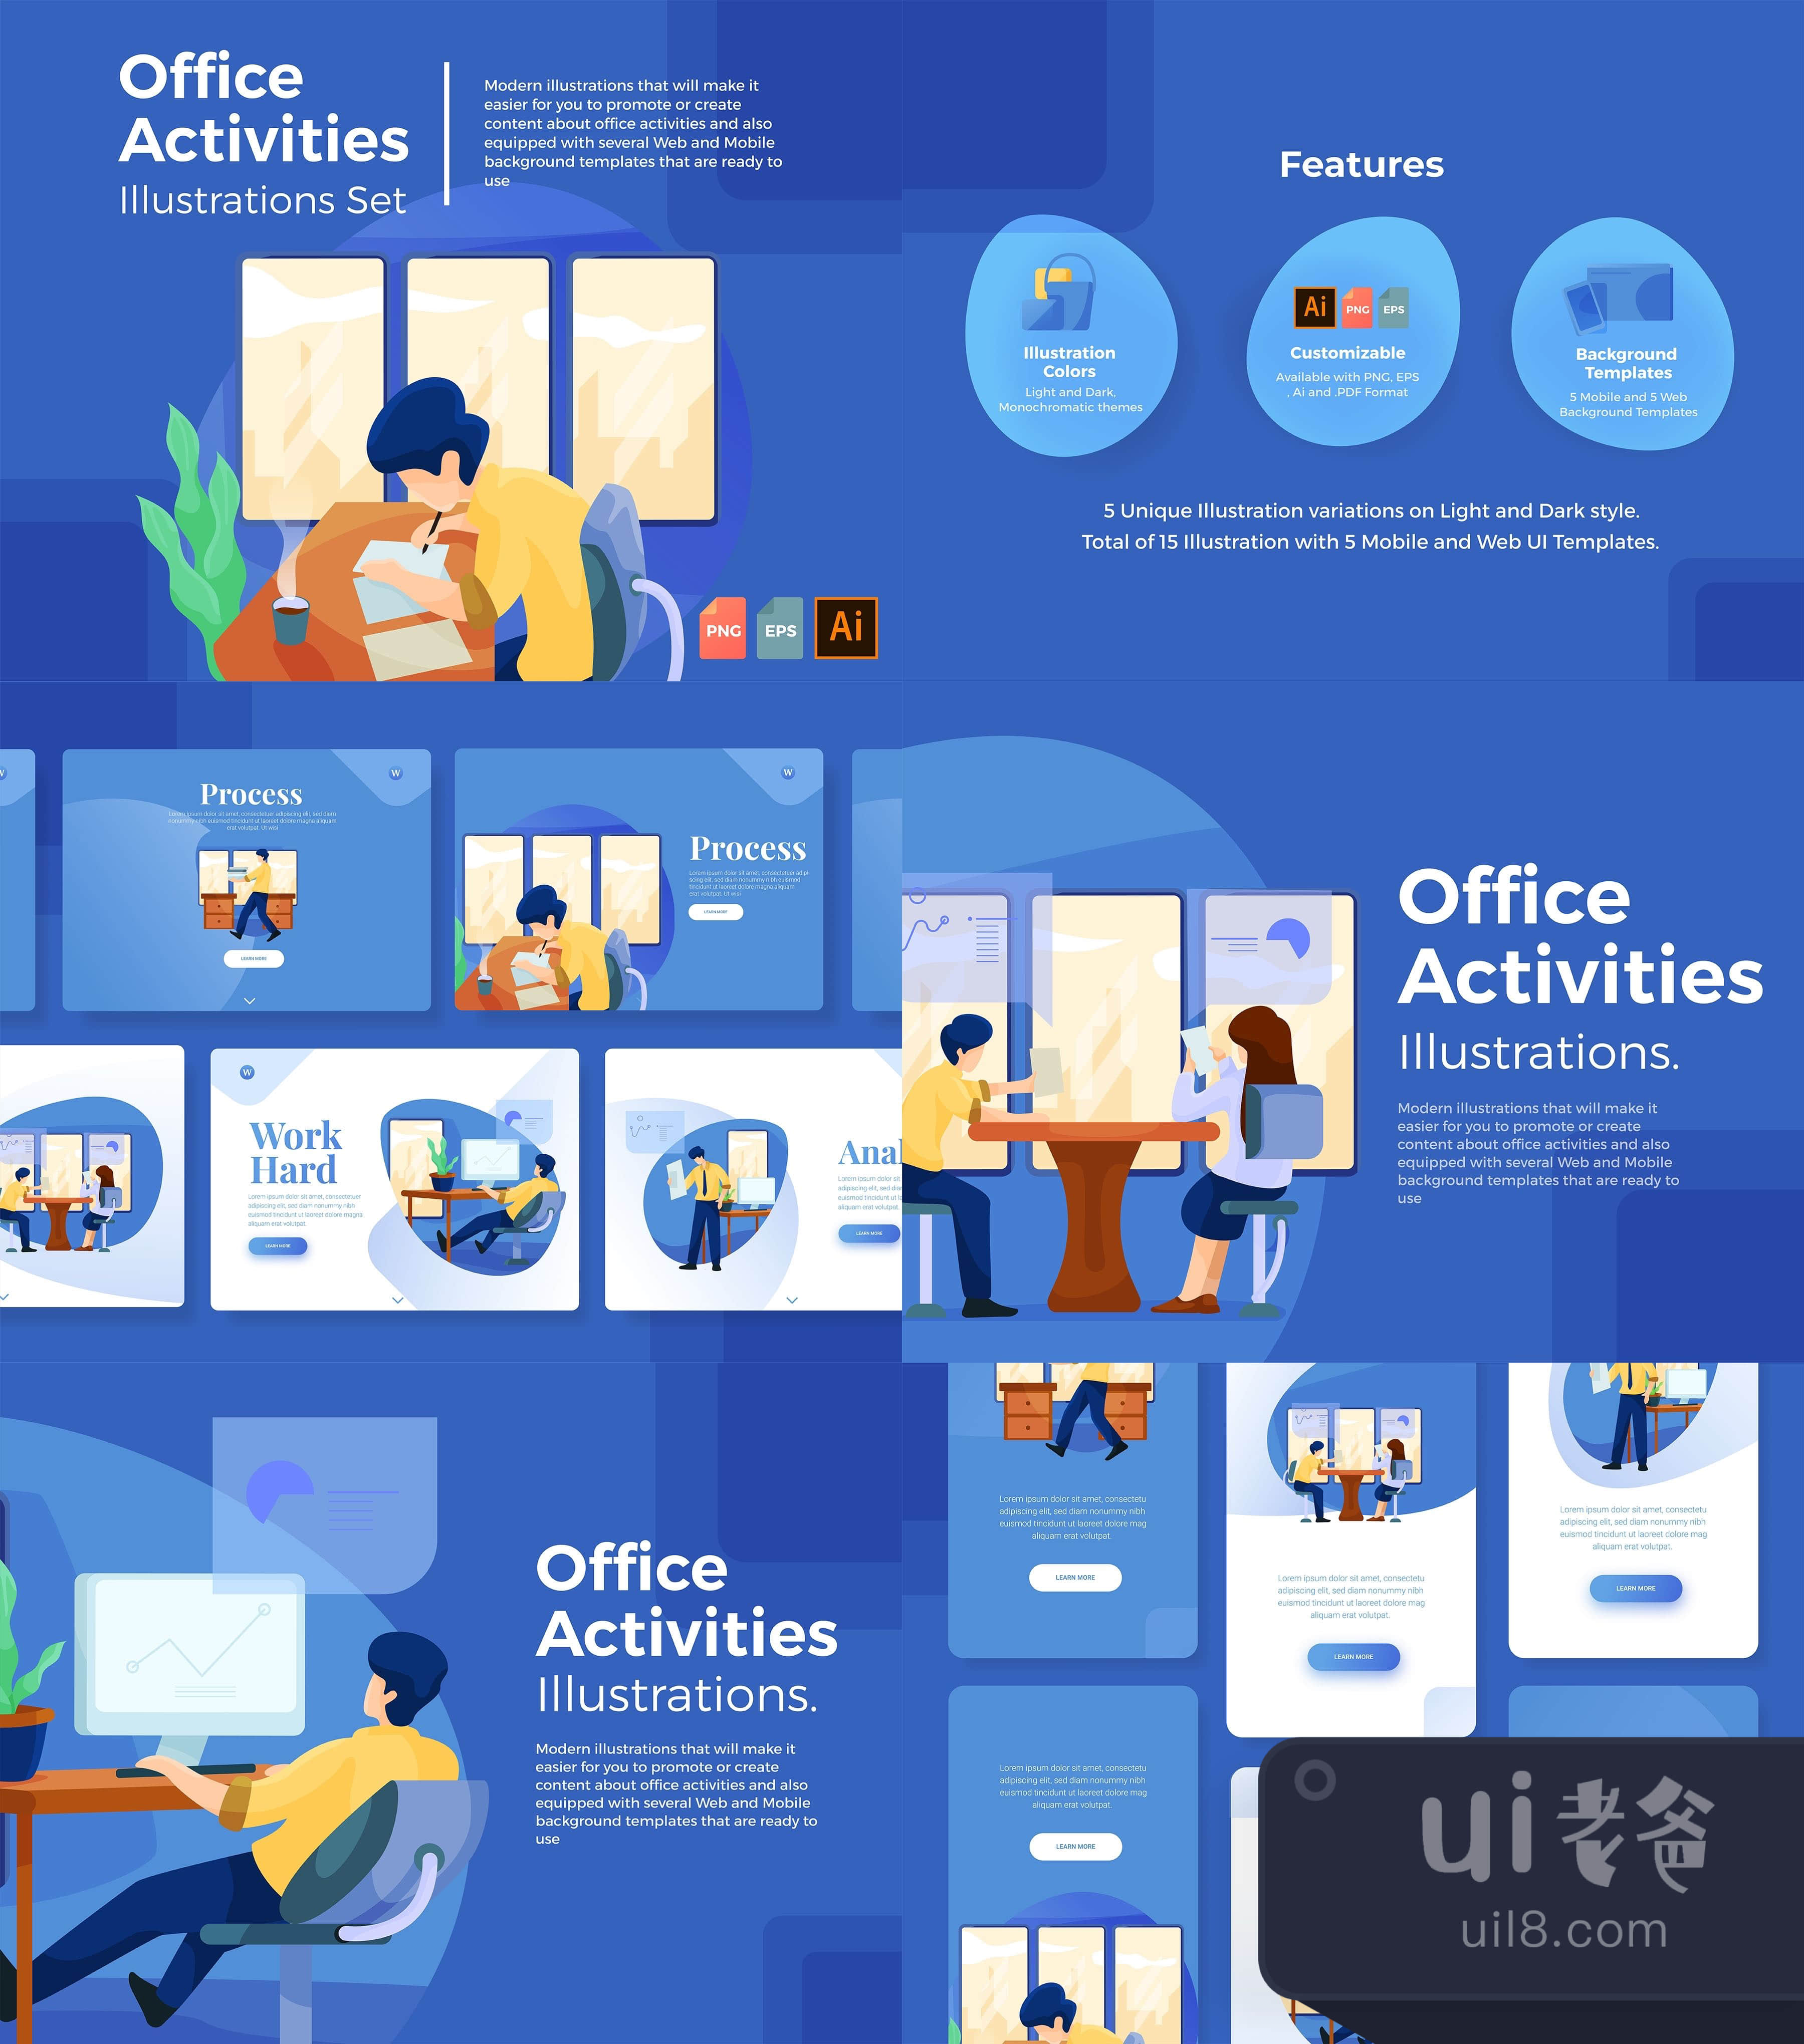 办公室活动插图集 (Office Activities Illustration Set)插图1